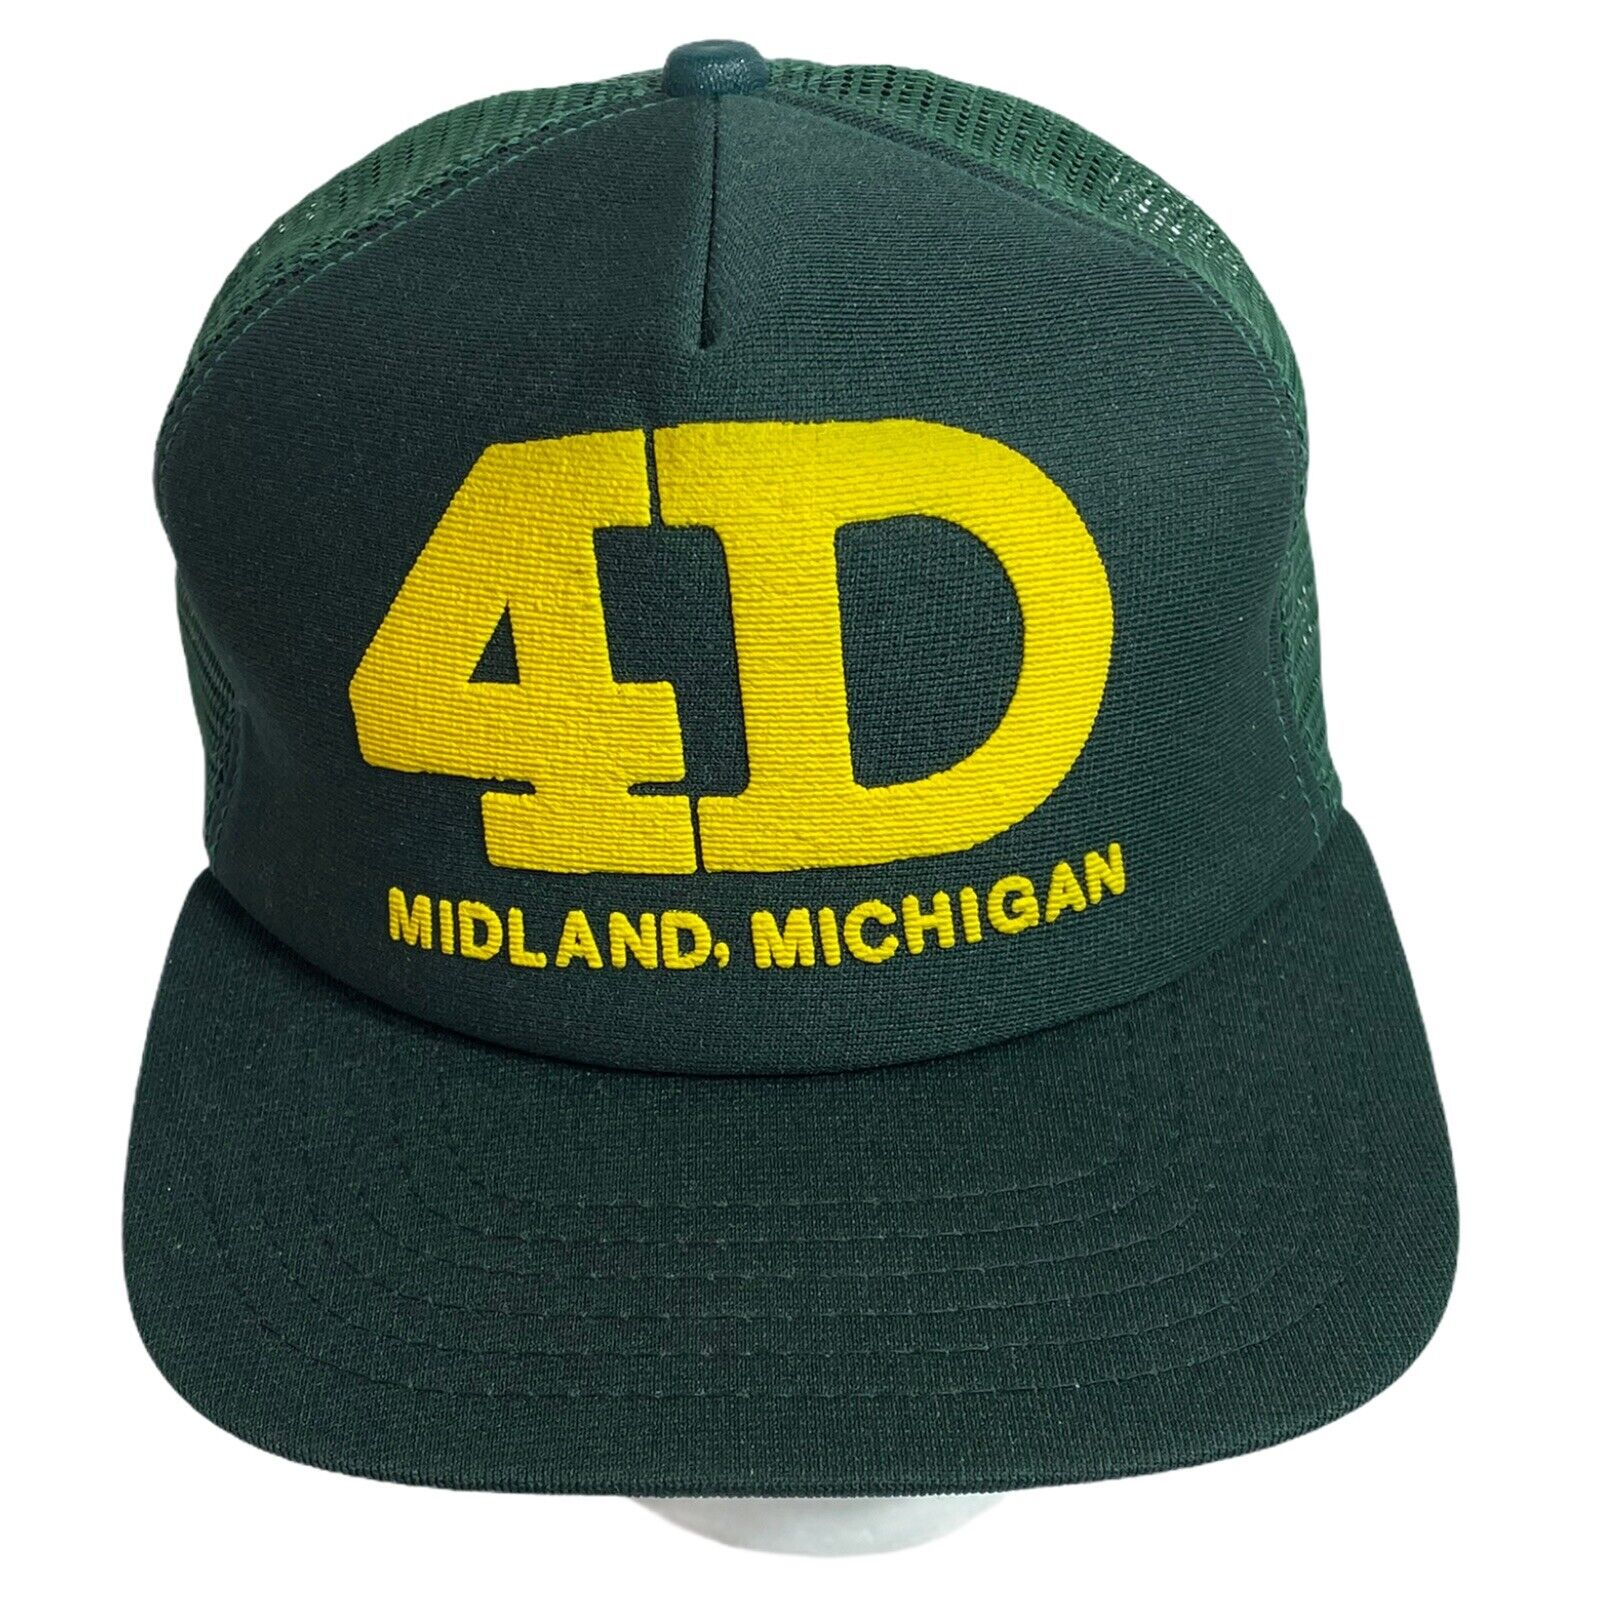 Vintage New Era 4D Green Trucker Mesh Hat Made in the USA Midland MI | eBay